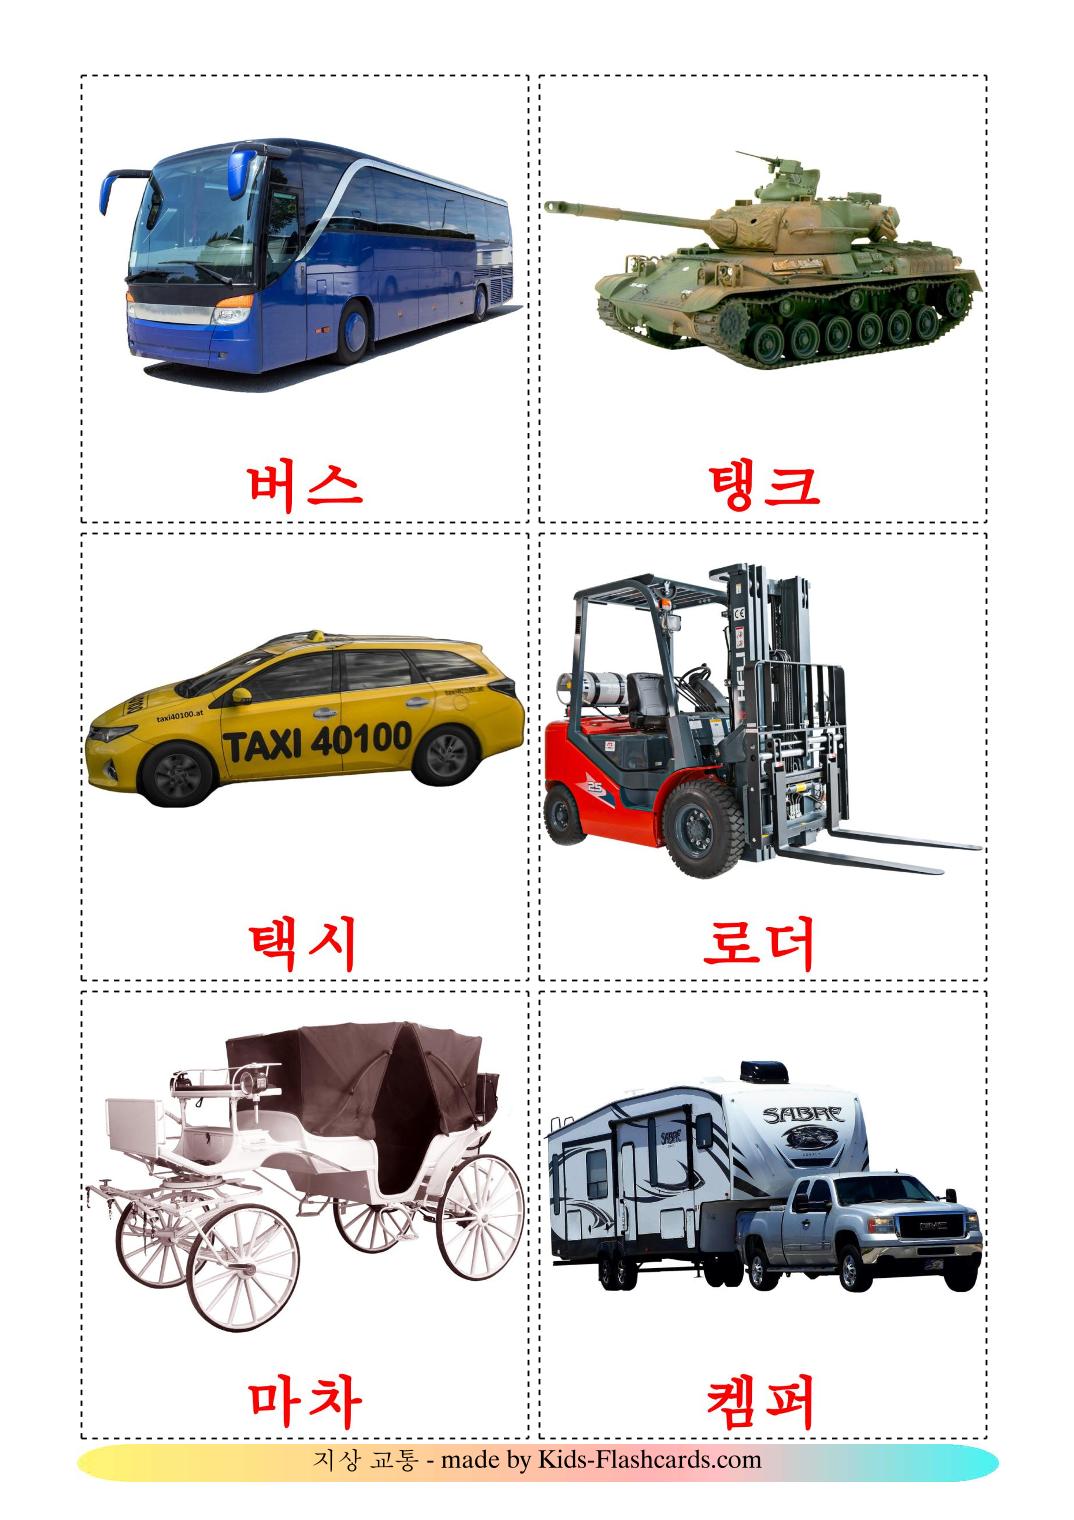 Transporte terrestre - 27 Flashcards coreanoes gratuitos para impressão